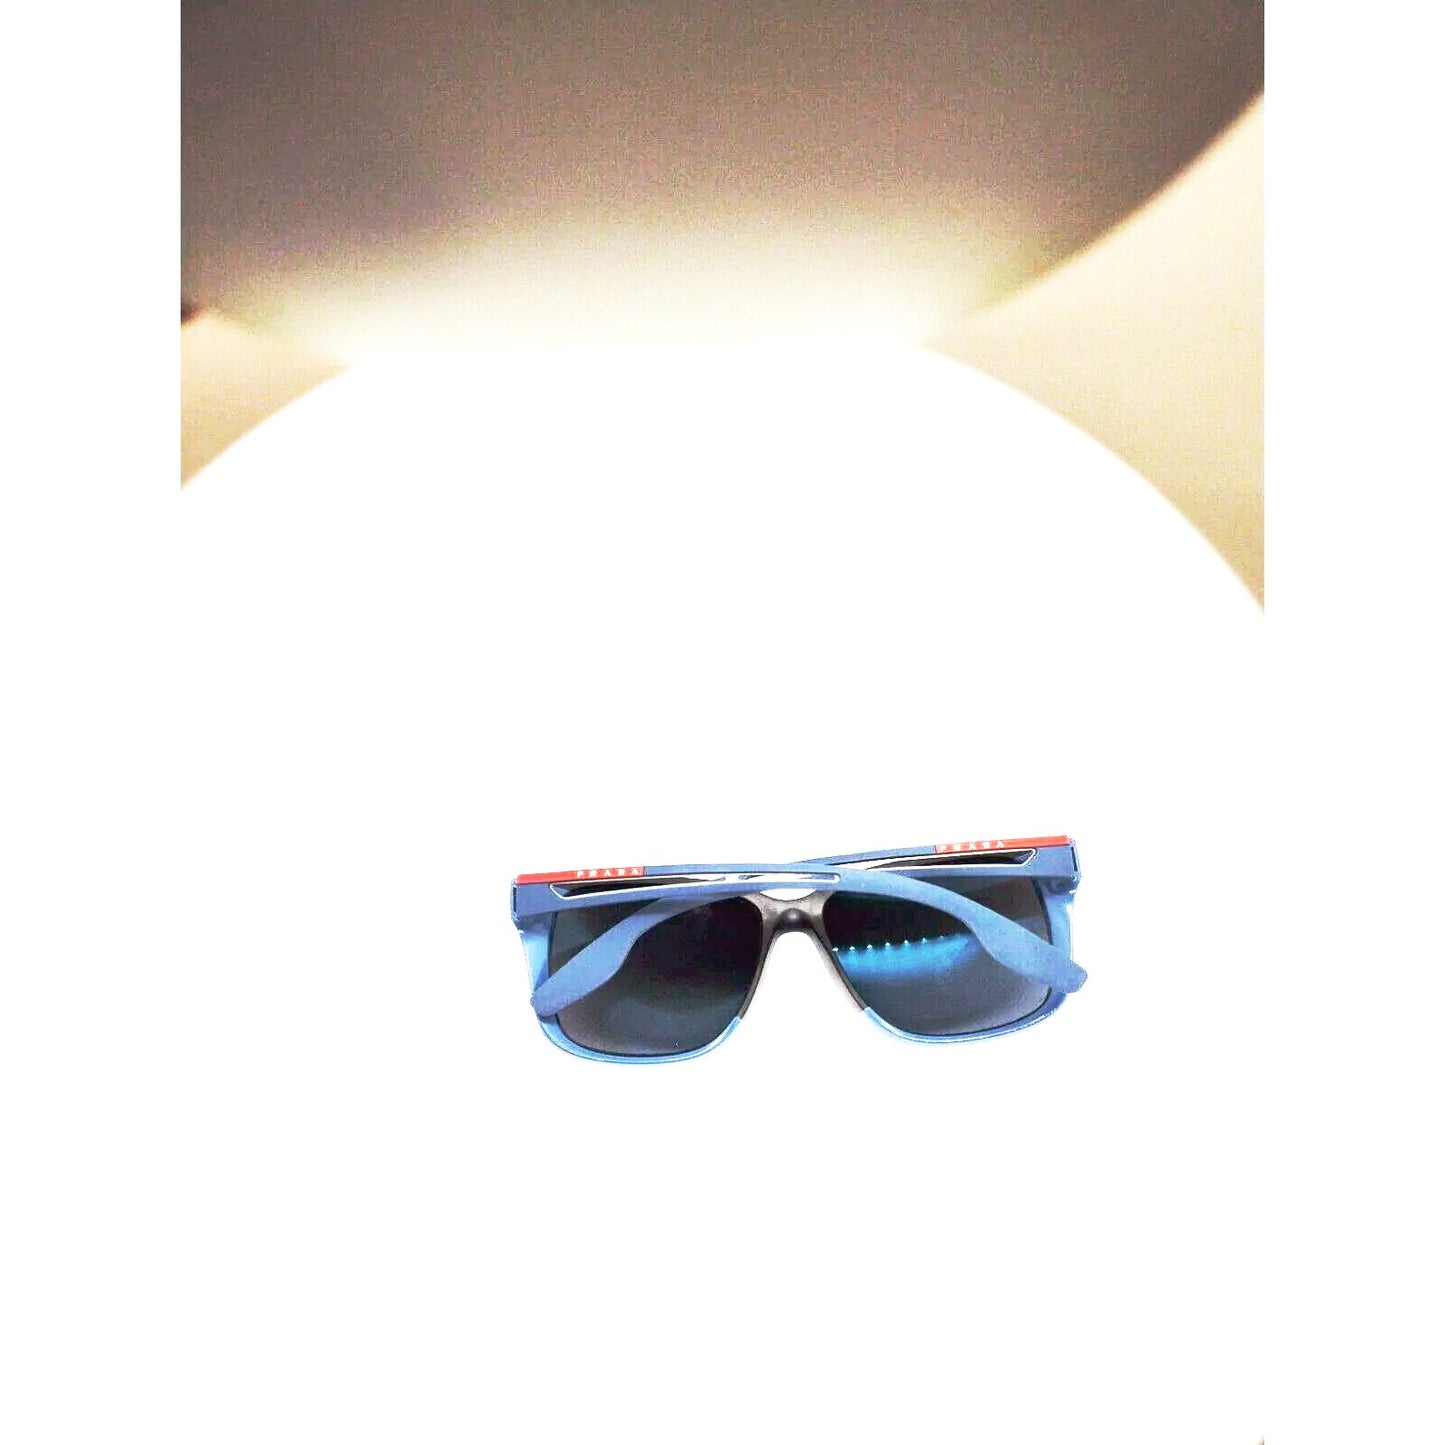 Prada mens polarized sunglasses sps 03TS blue frame gray lenses - Classic Fashion DealsPrada mens polarized sunglasses sps 03TS blue frame gray lensesPradaClassic Fashion DealsPrada mens polarized sunglasses sps 03TS blue frame gray lenses